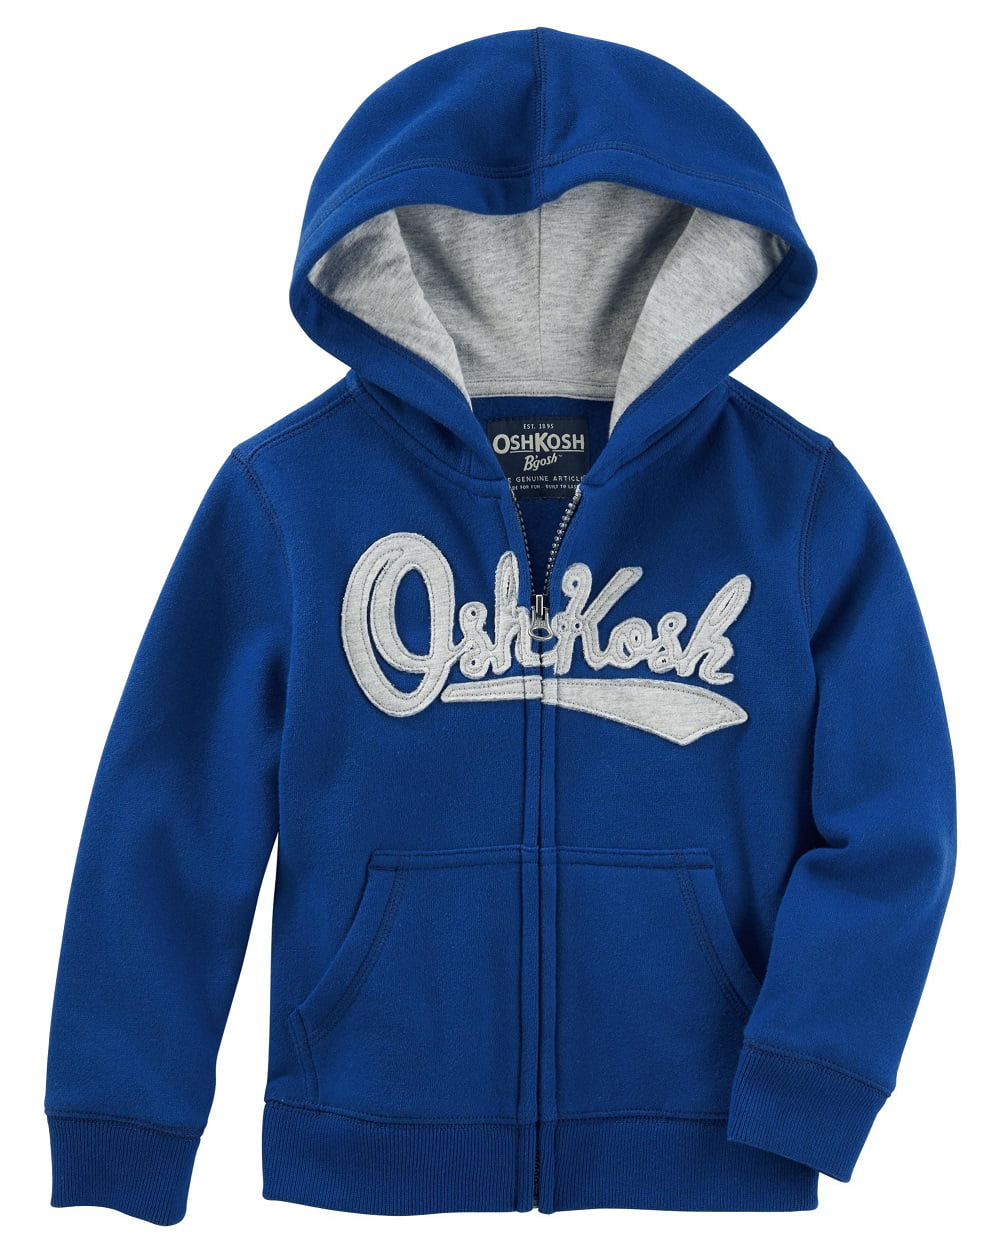 OshKosh B'Gosh Infant Boys Zip-Up OshKosh Logo Hoodie Navy Blue NWT jacket